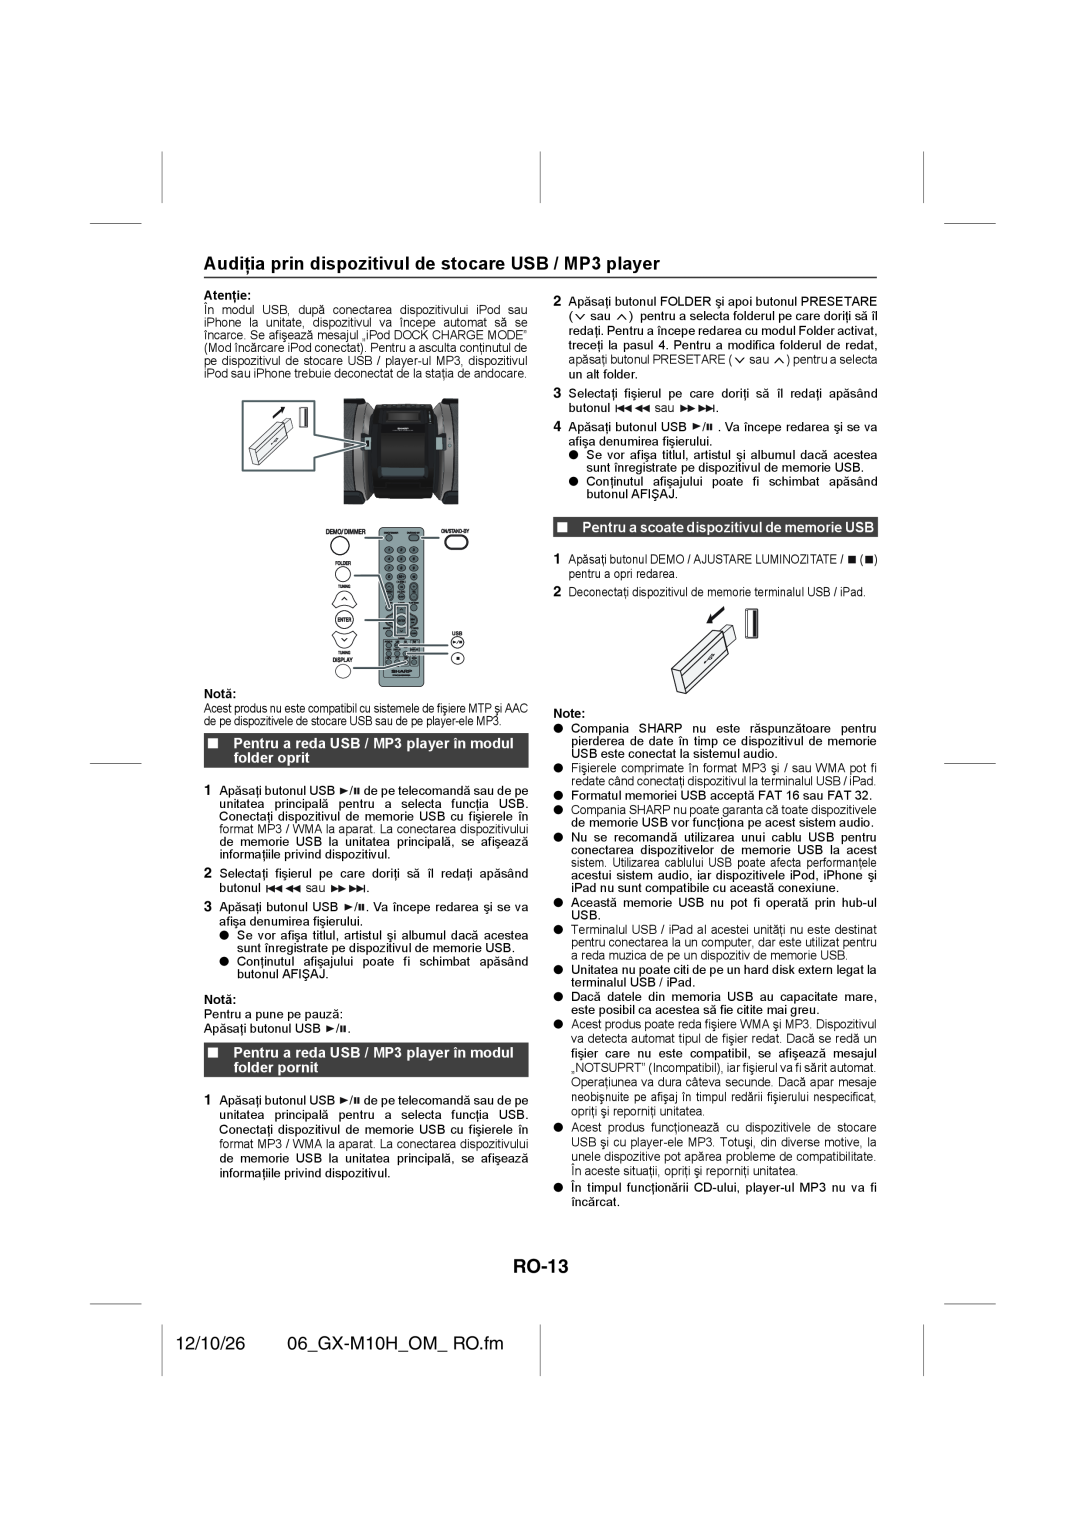 Sharp GX-M10H(OR), GX-M10H(RD) RO-13, 12/10/26 06_GX-M10H_OM_RO.fm, Pentru a scoate dispozitivul de memorie USB 